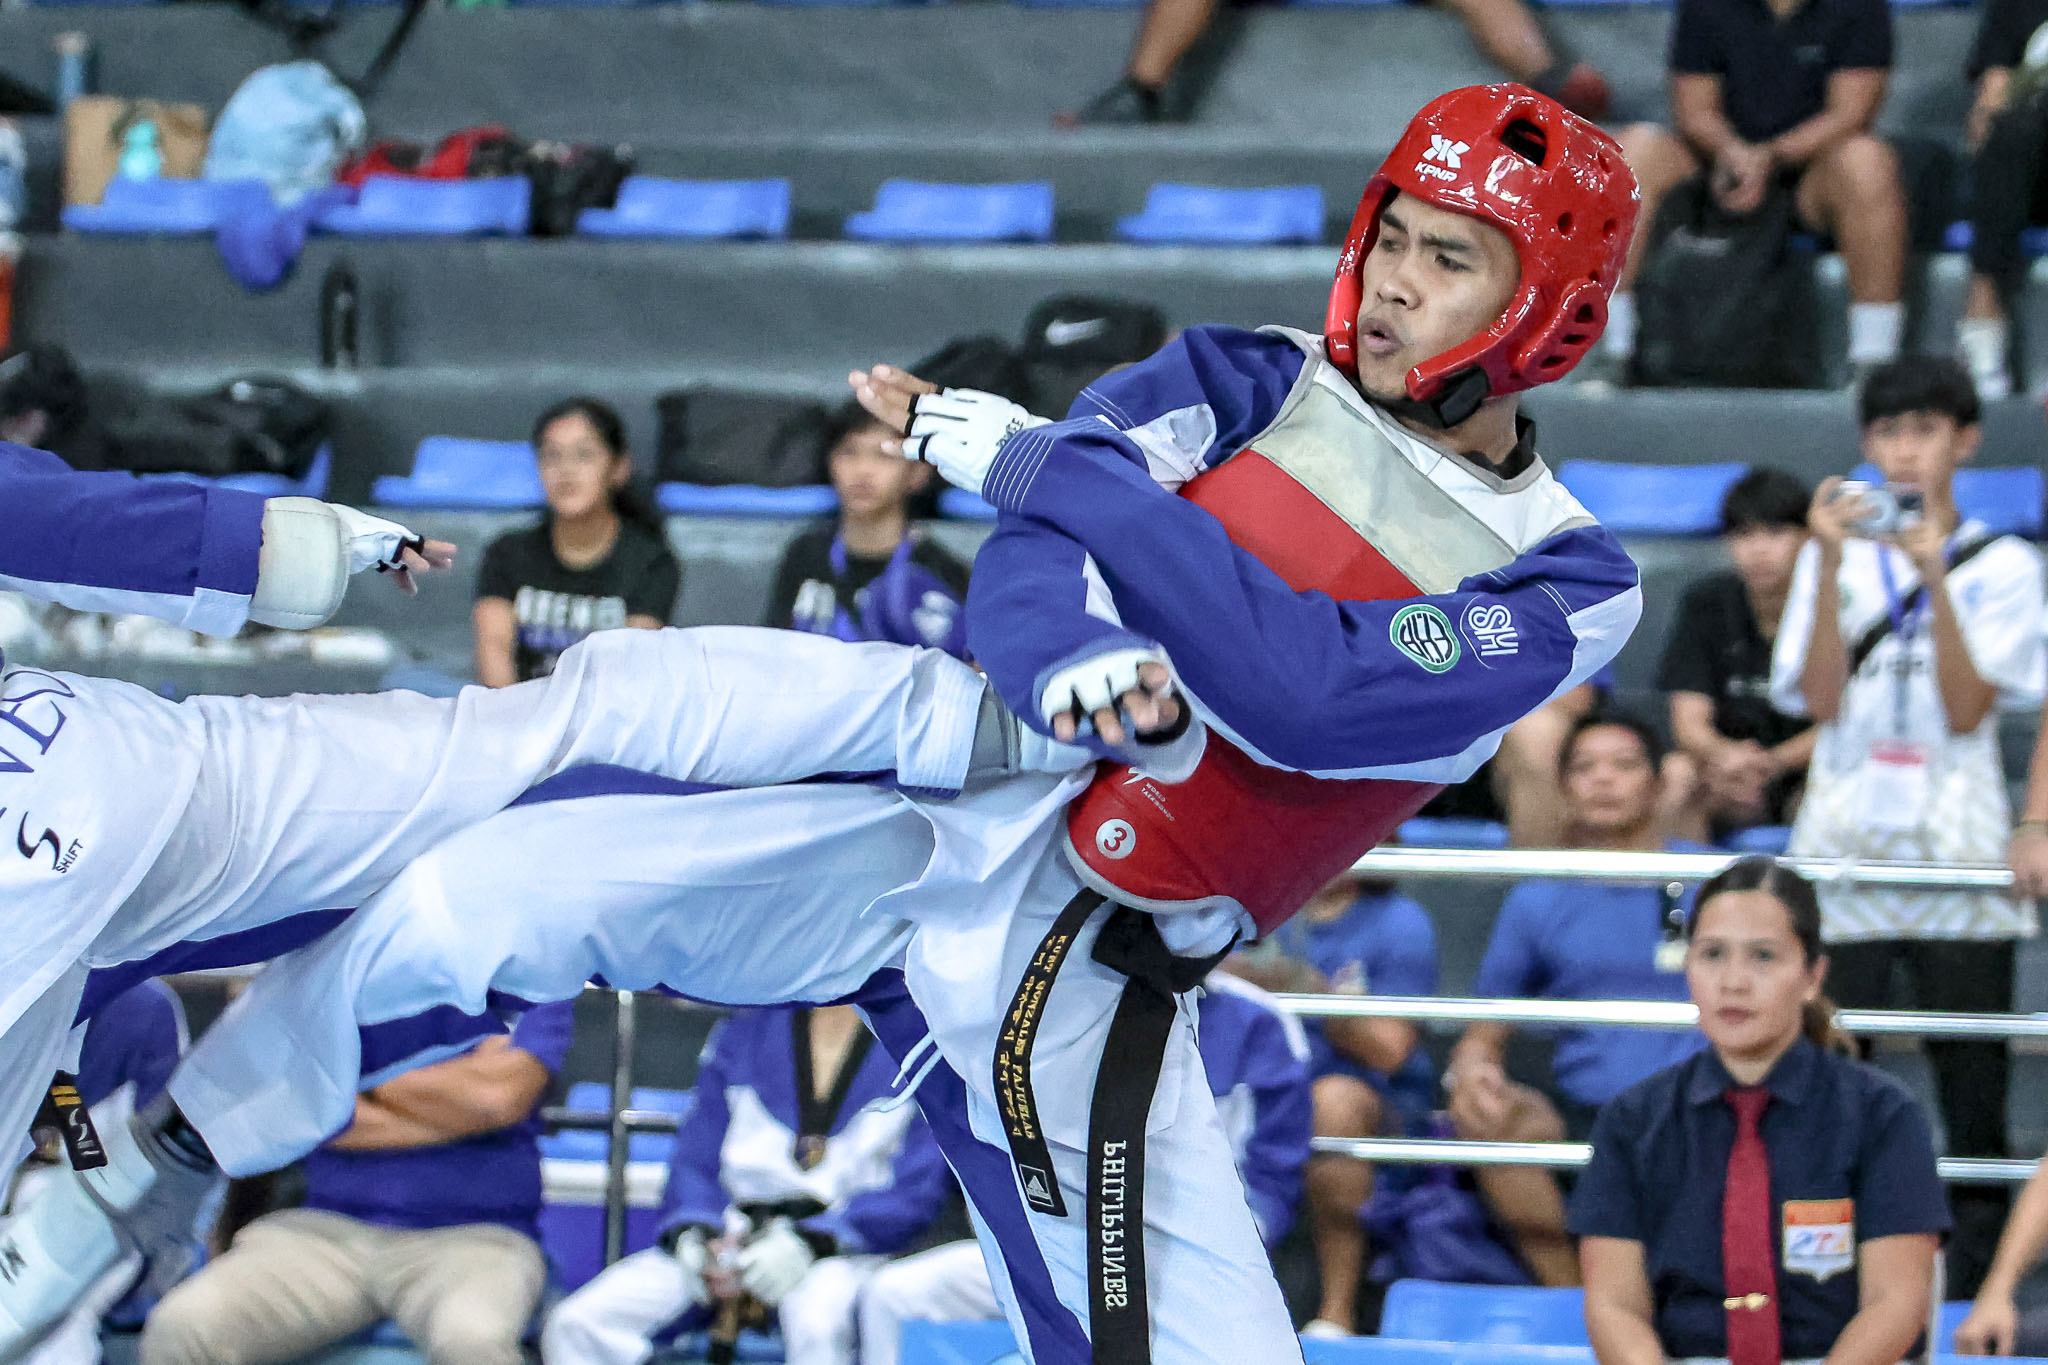 UAAP-86-Kyorugi-Kurt-Pajuelas-NU UAAP 86 Taekwondo: Sturdy Gilbuena steps up for Kurt Barbosa, leads NU to 3-0 start ADMU DLSU FEU News NU Taekwondo UAAP UP UST  - philippine sports news